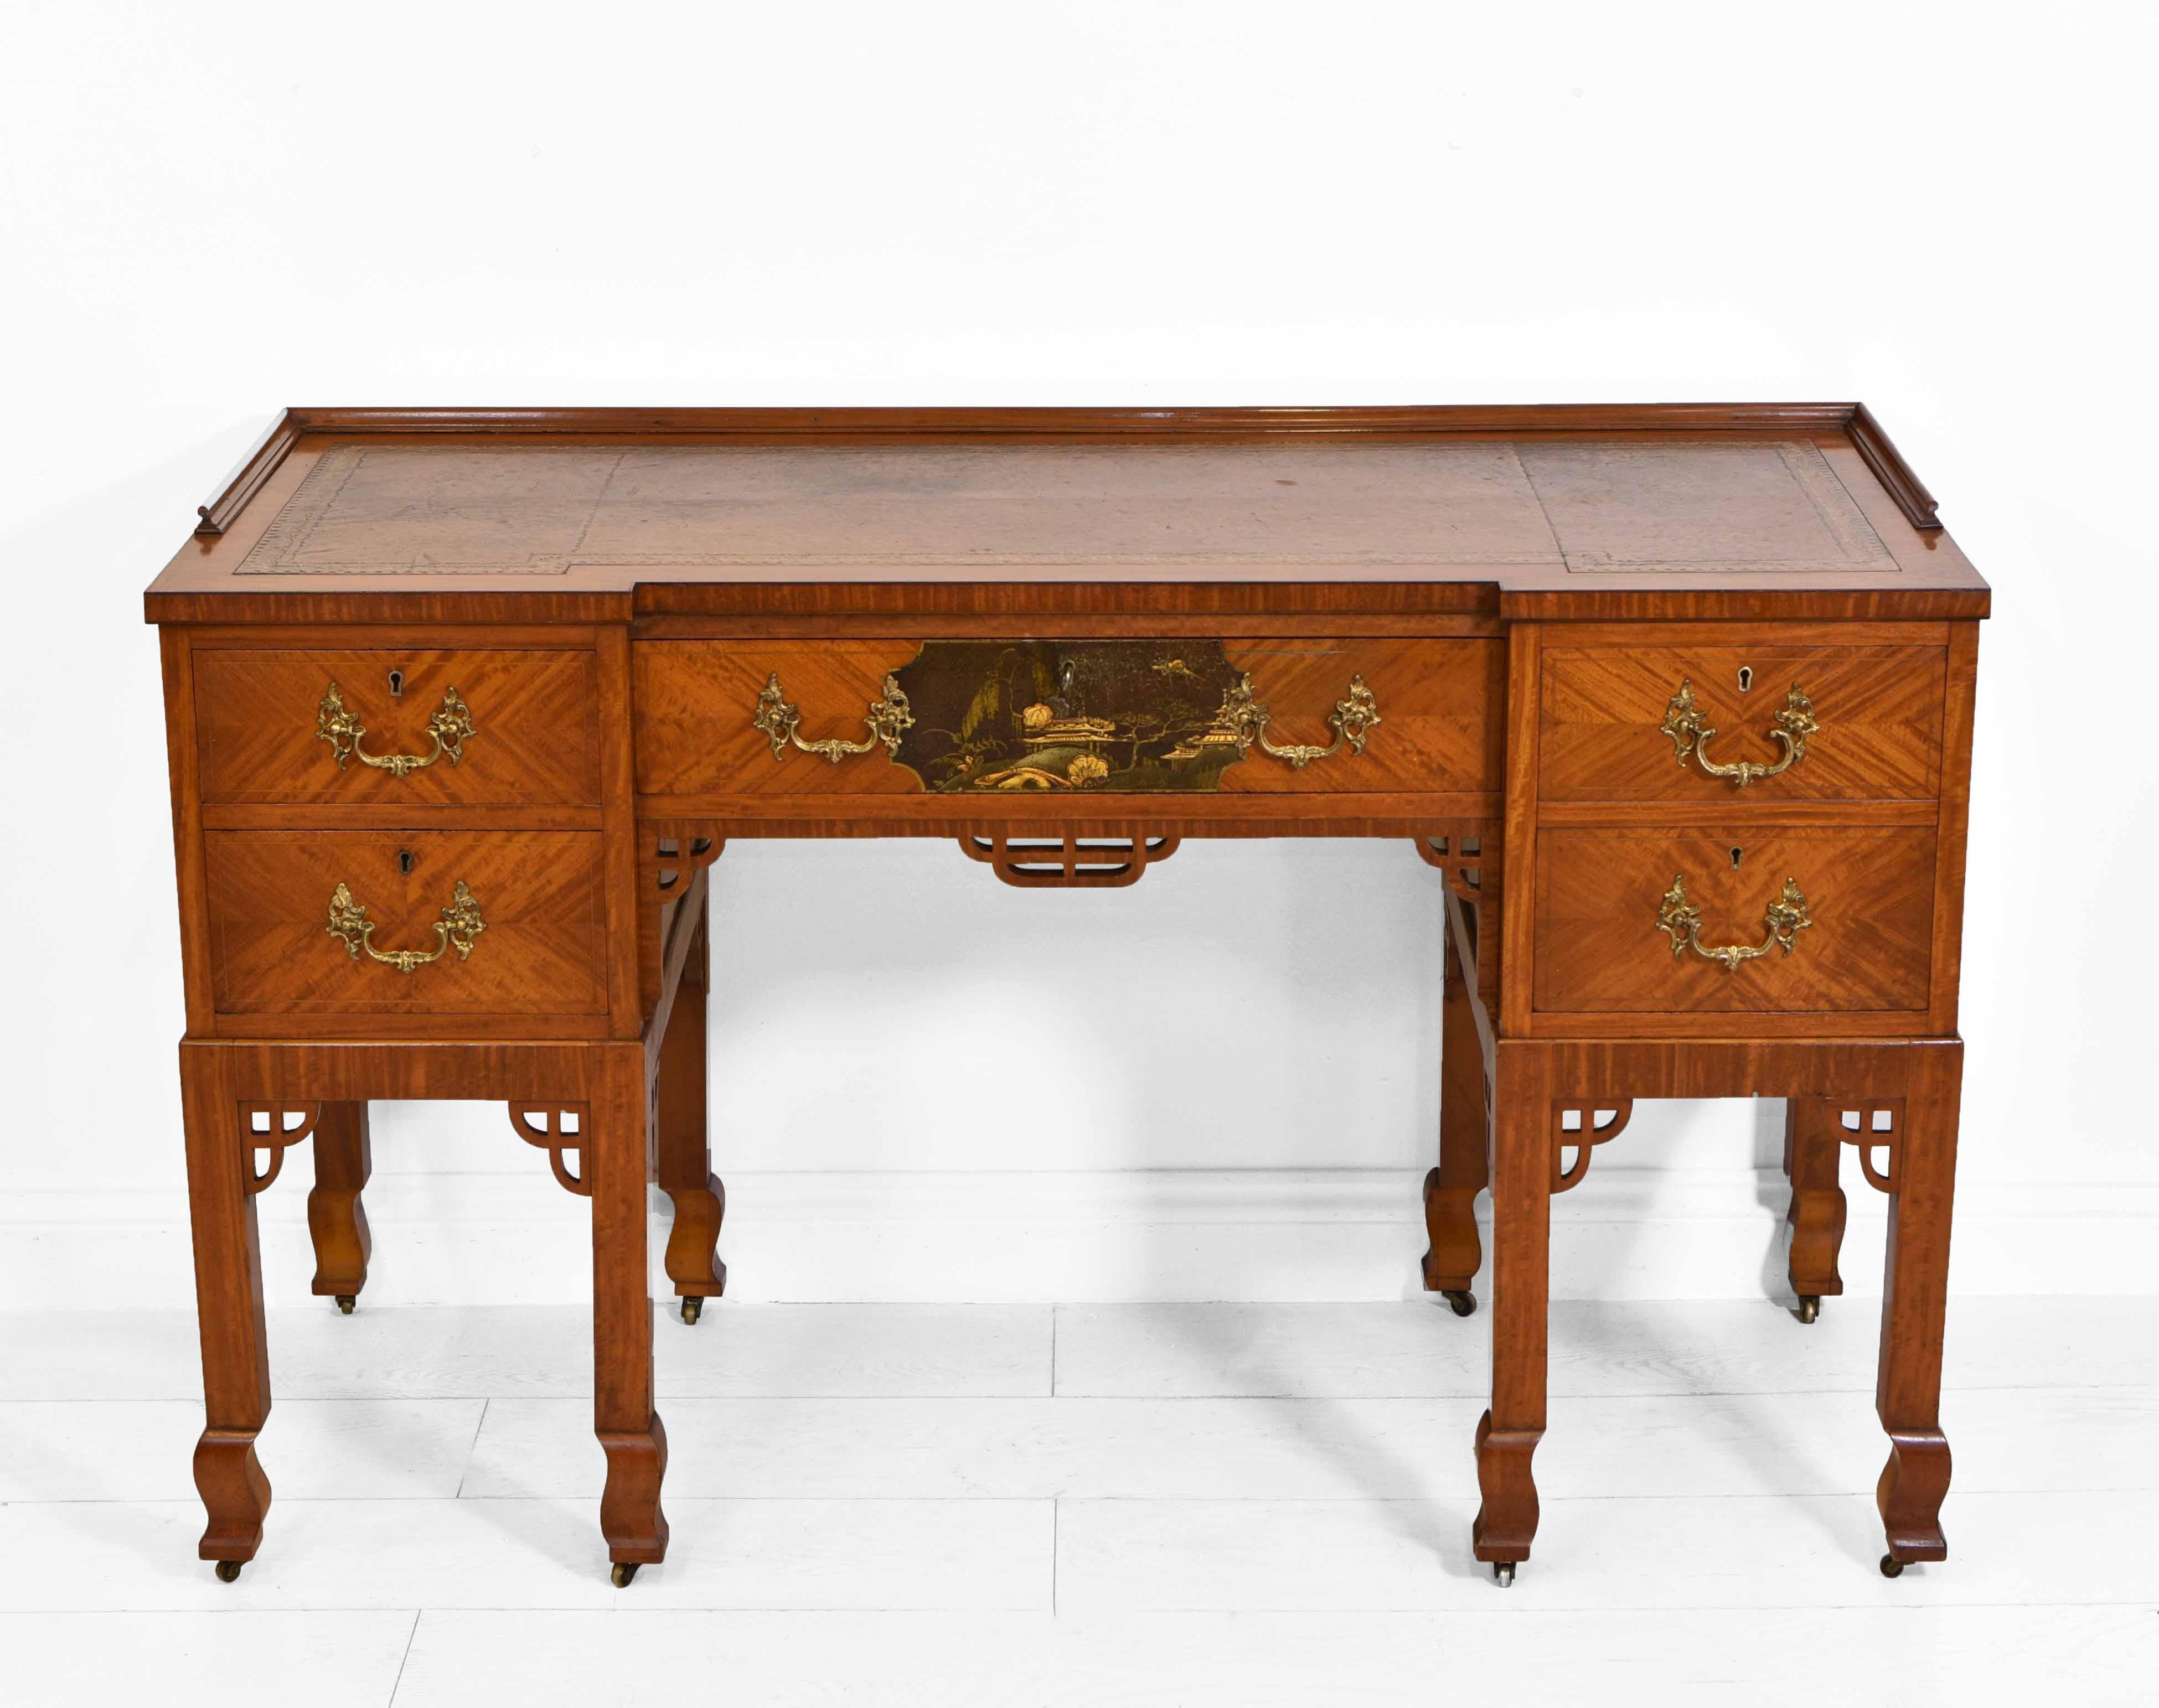 Ein antiker Edwardianischer Schreibtisch aus satiniertem Holz mit umgekehrter Front, mit Leder und vergoldetem Einsatz. Englisch. Um 1900.

Dieser hochwertige Schreibtisch hat eine kleine Japanszene in der mittleren Schublade, verzierte vergoldete